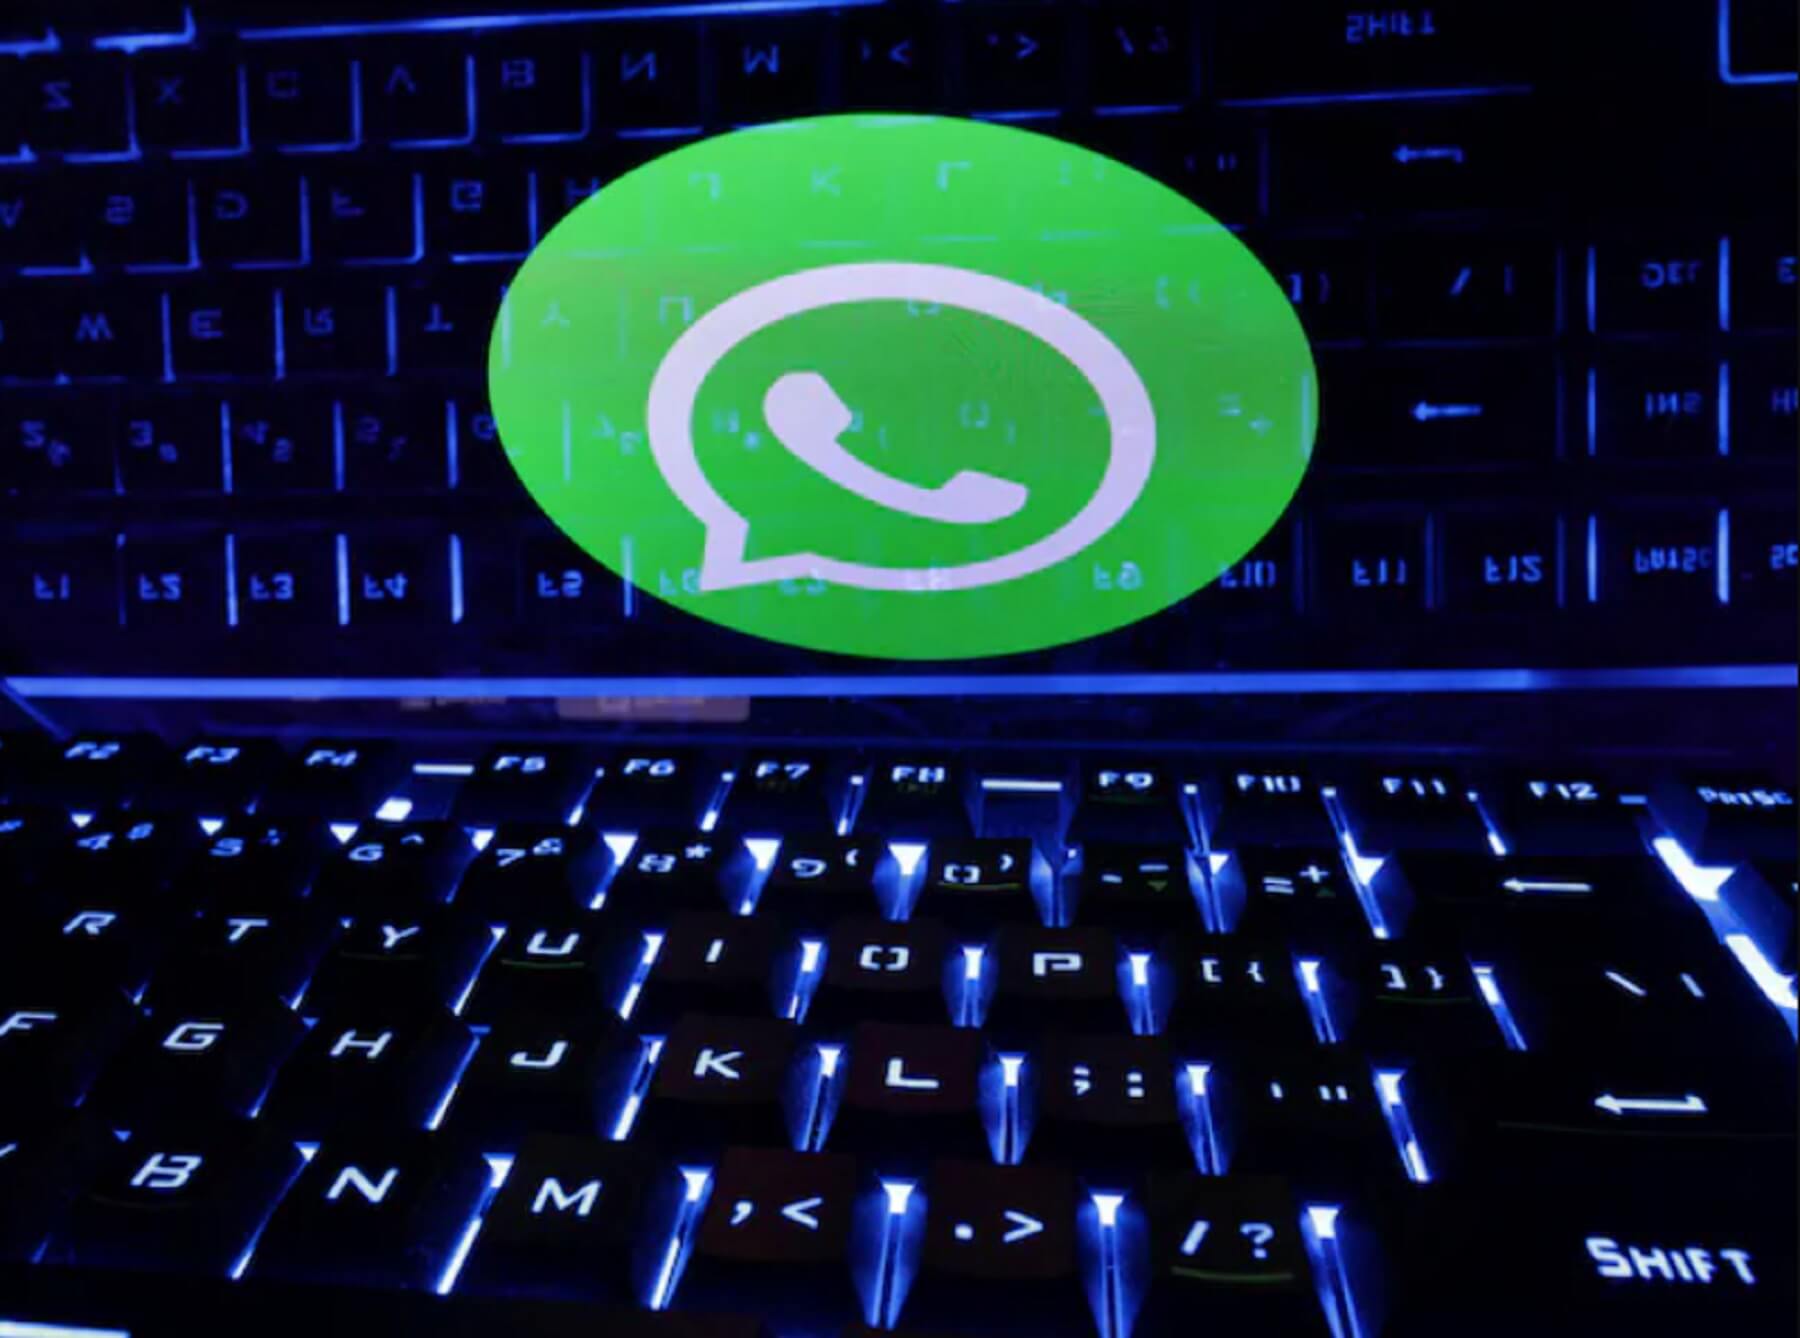 WhatsApp може припинити роботу в Індії